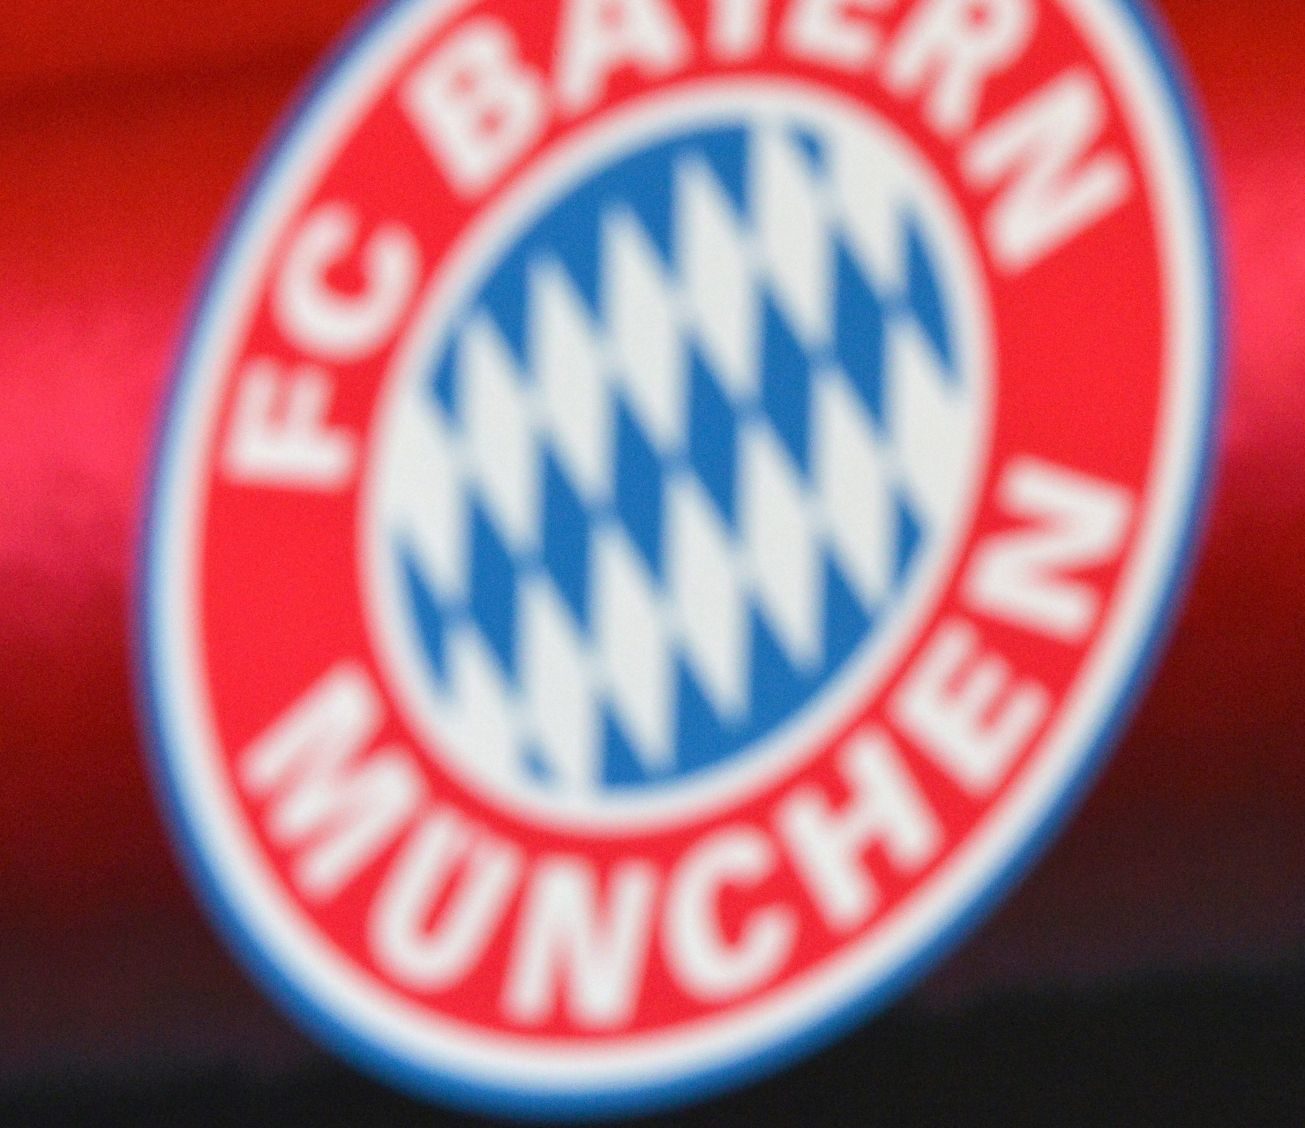 Tolisso u Bayernu za rekordnih 41.5 milijuna eura